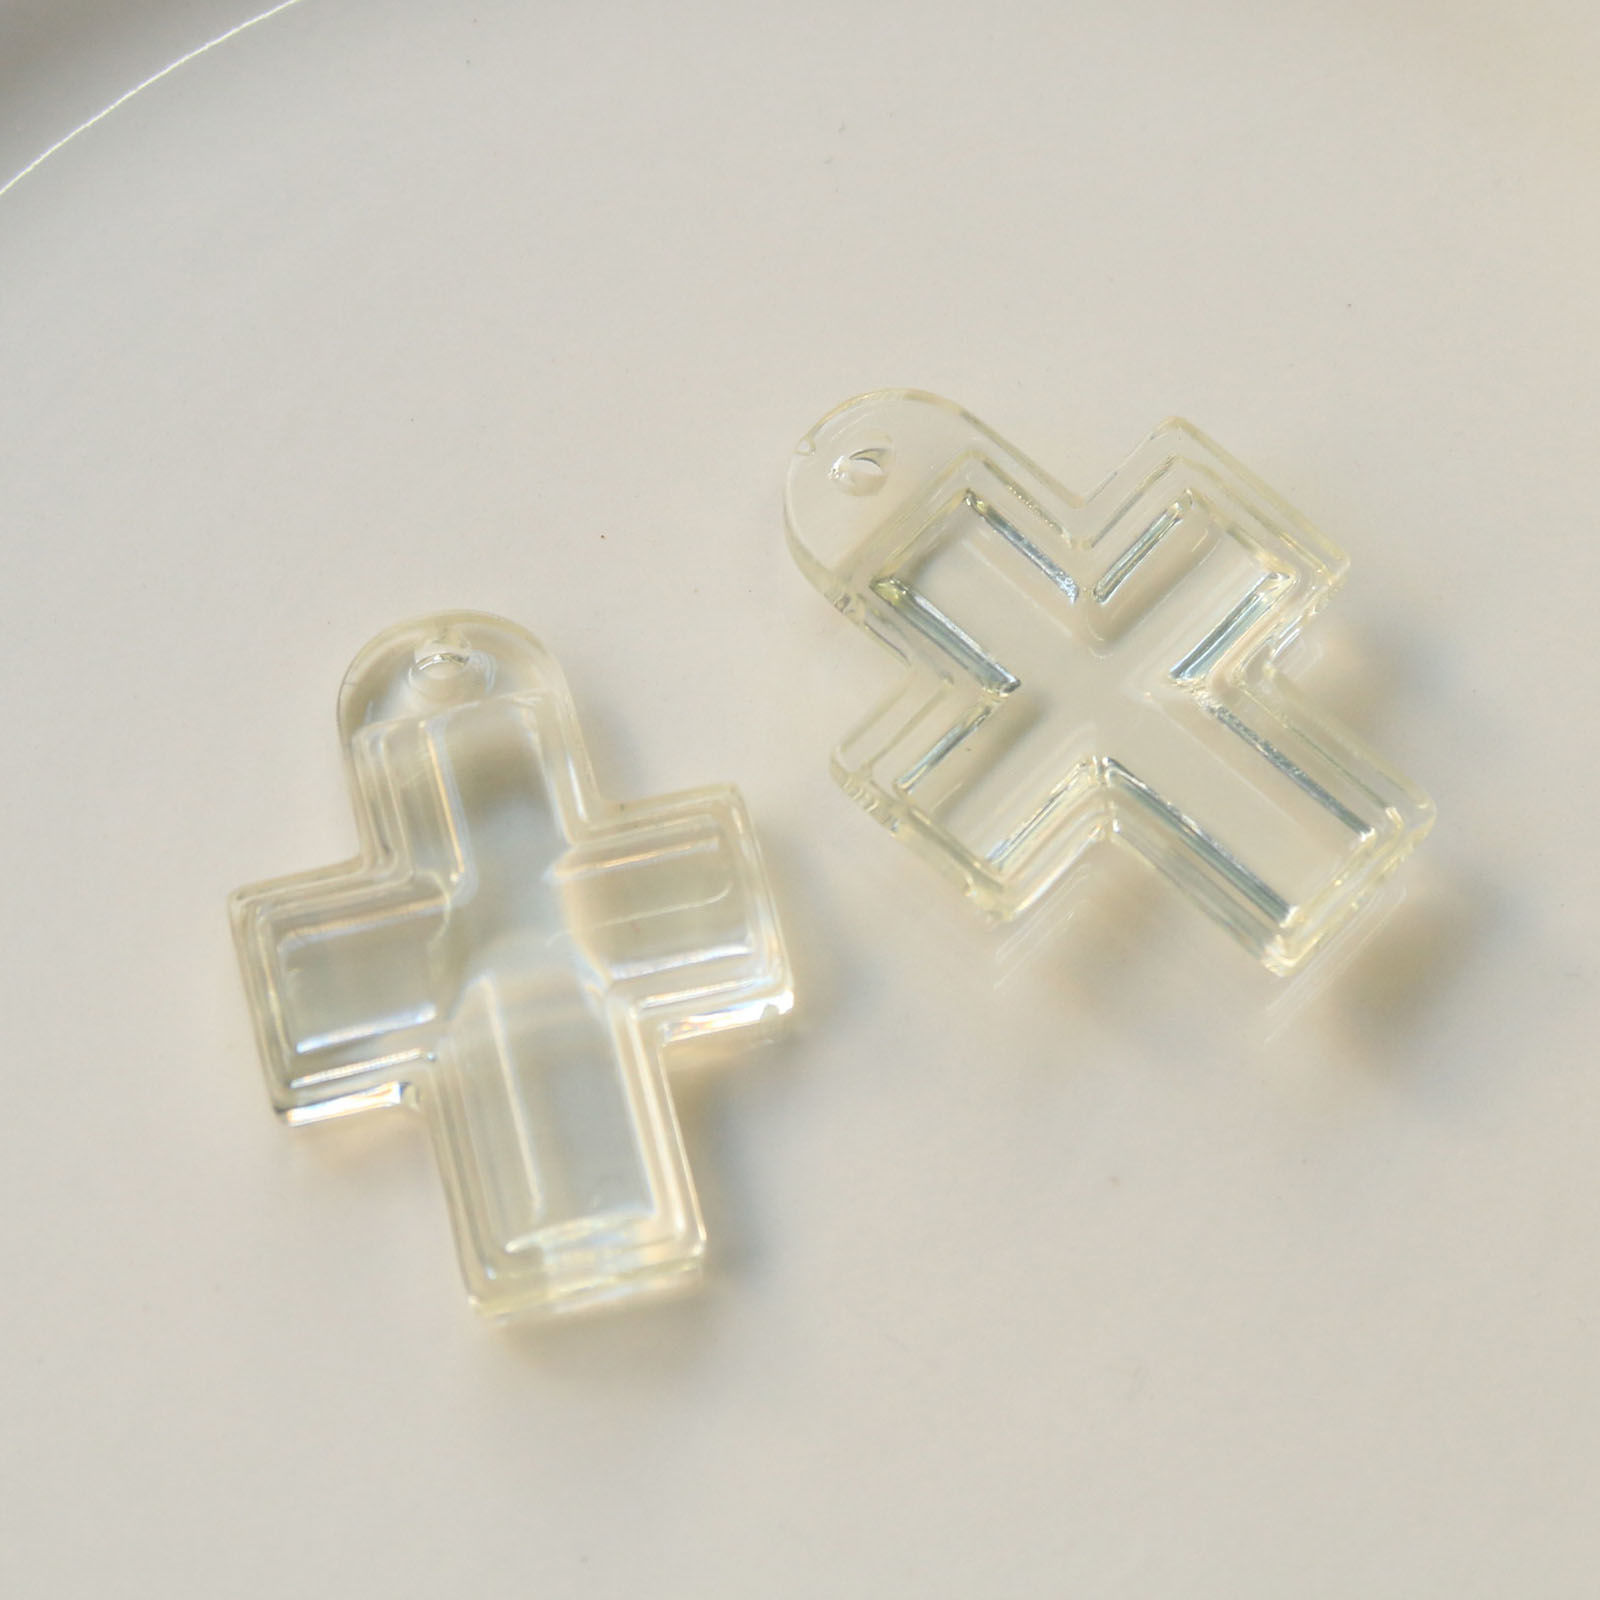 Picture of Acrylic Religious Pendants Cross Transparent Clear 3.7cm x 2.7cm, 5 PCs